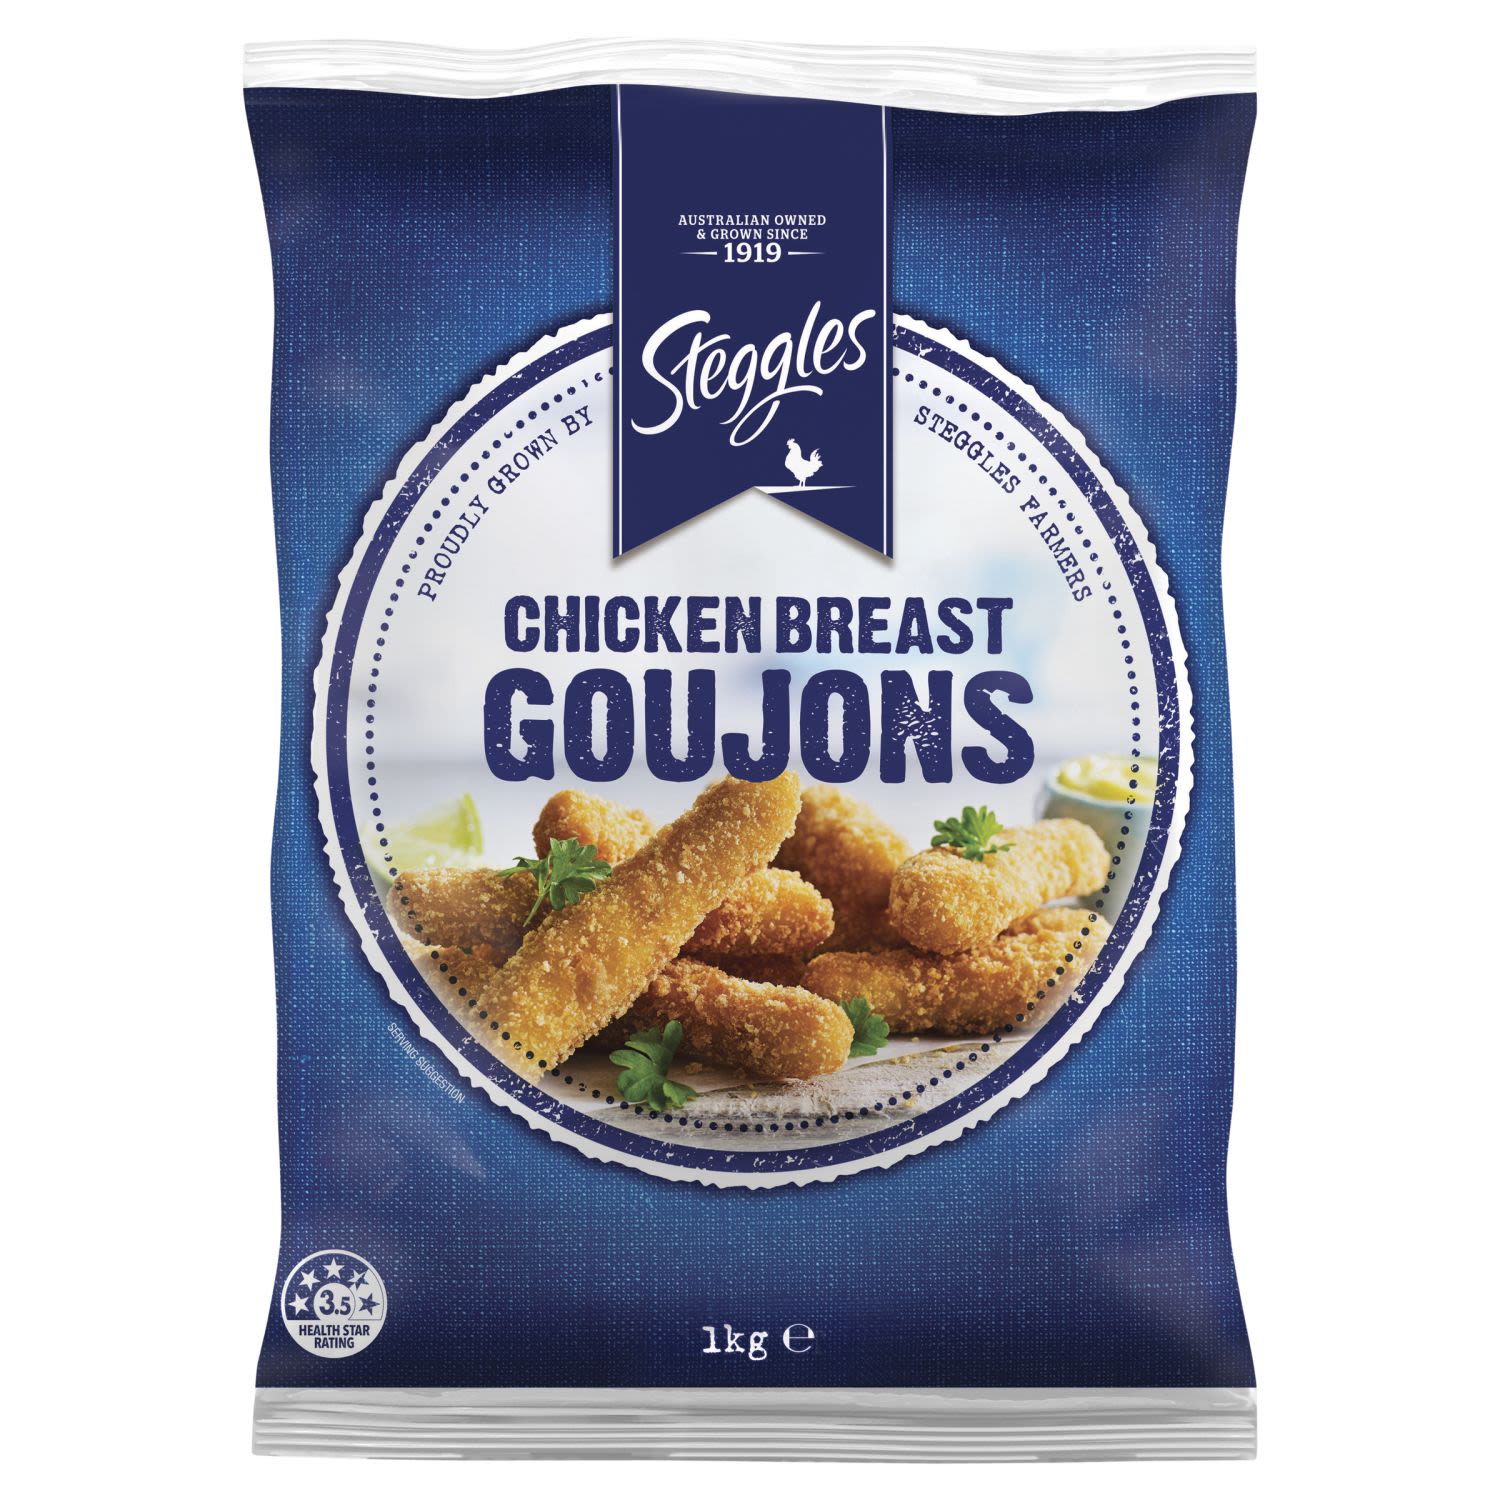 Steggles Chicken Breast Goujons, 1 Kilogram